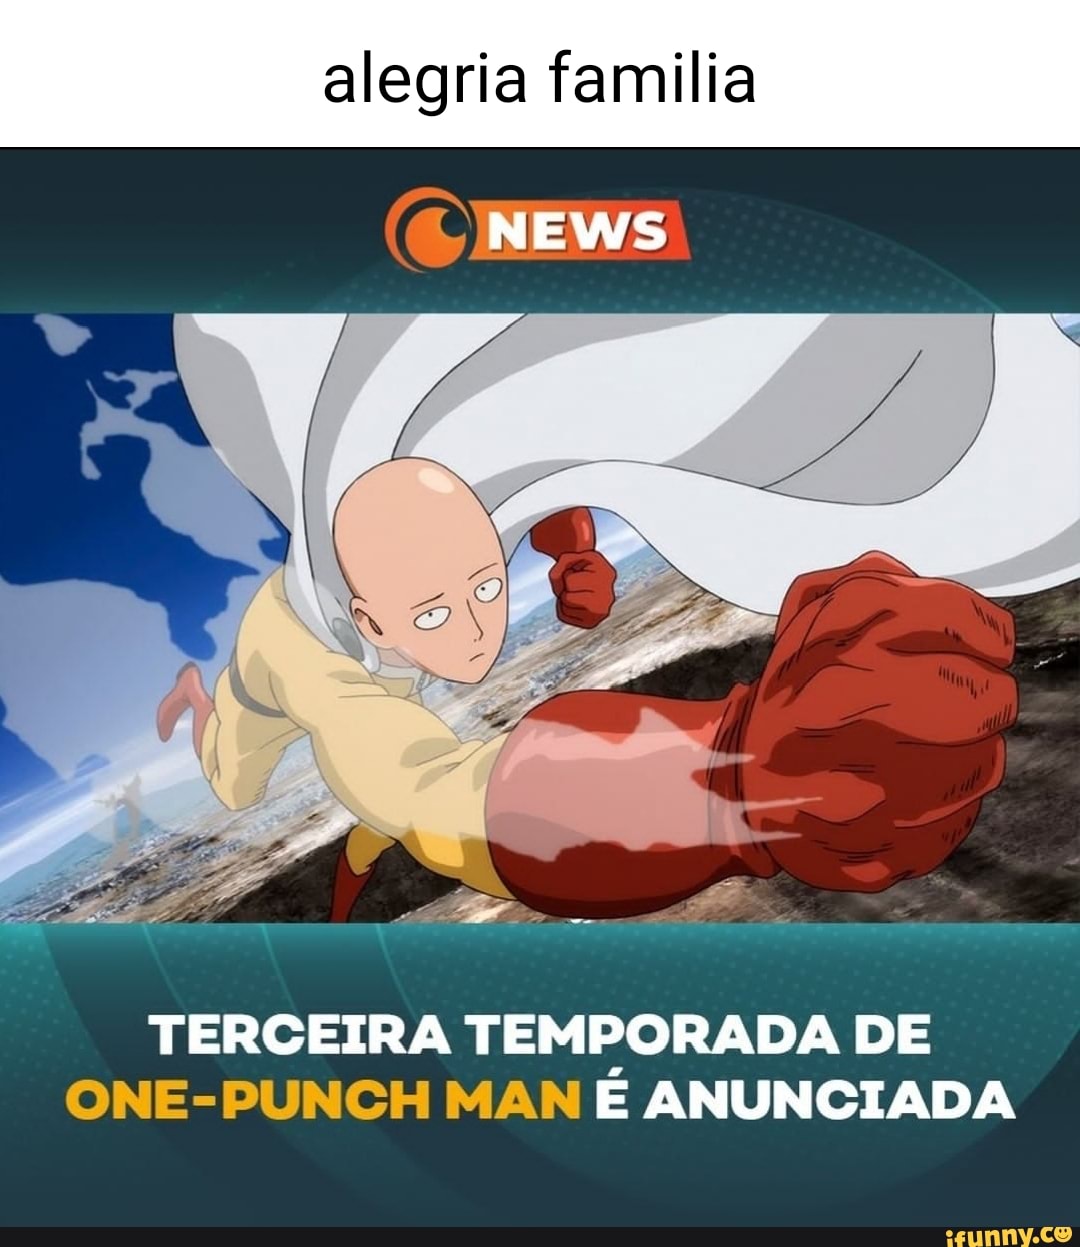 Alegria familia NEWS TERCEIRA TEMPORADA DE ONE-PUNCH MAN E